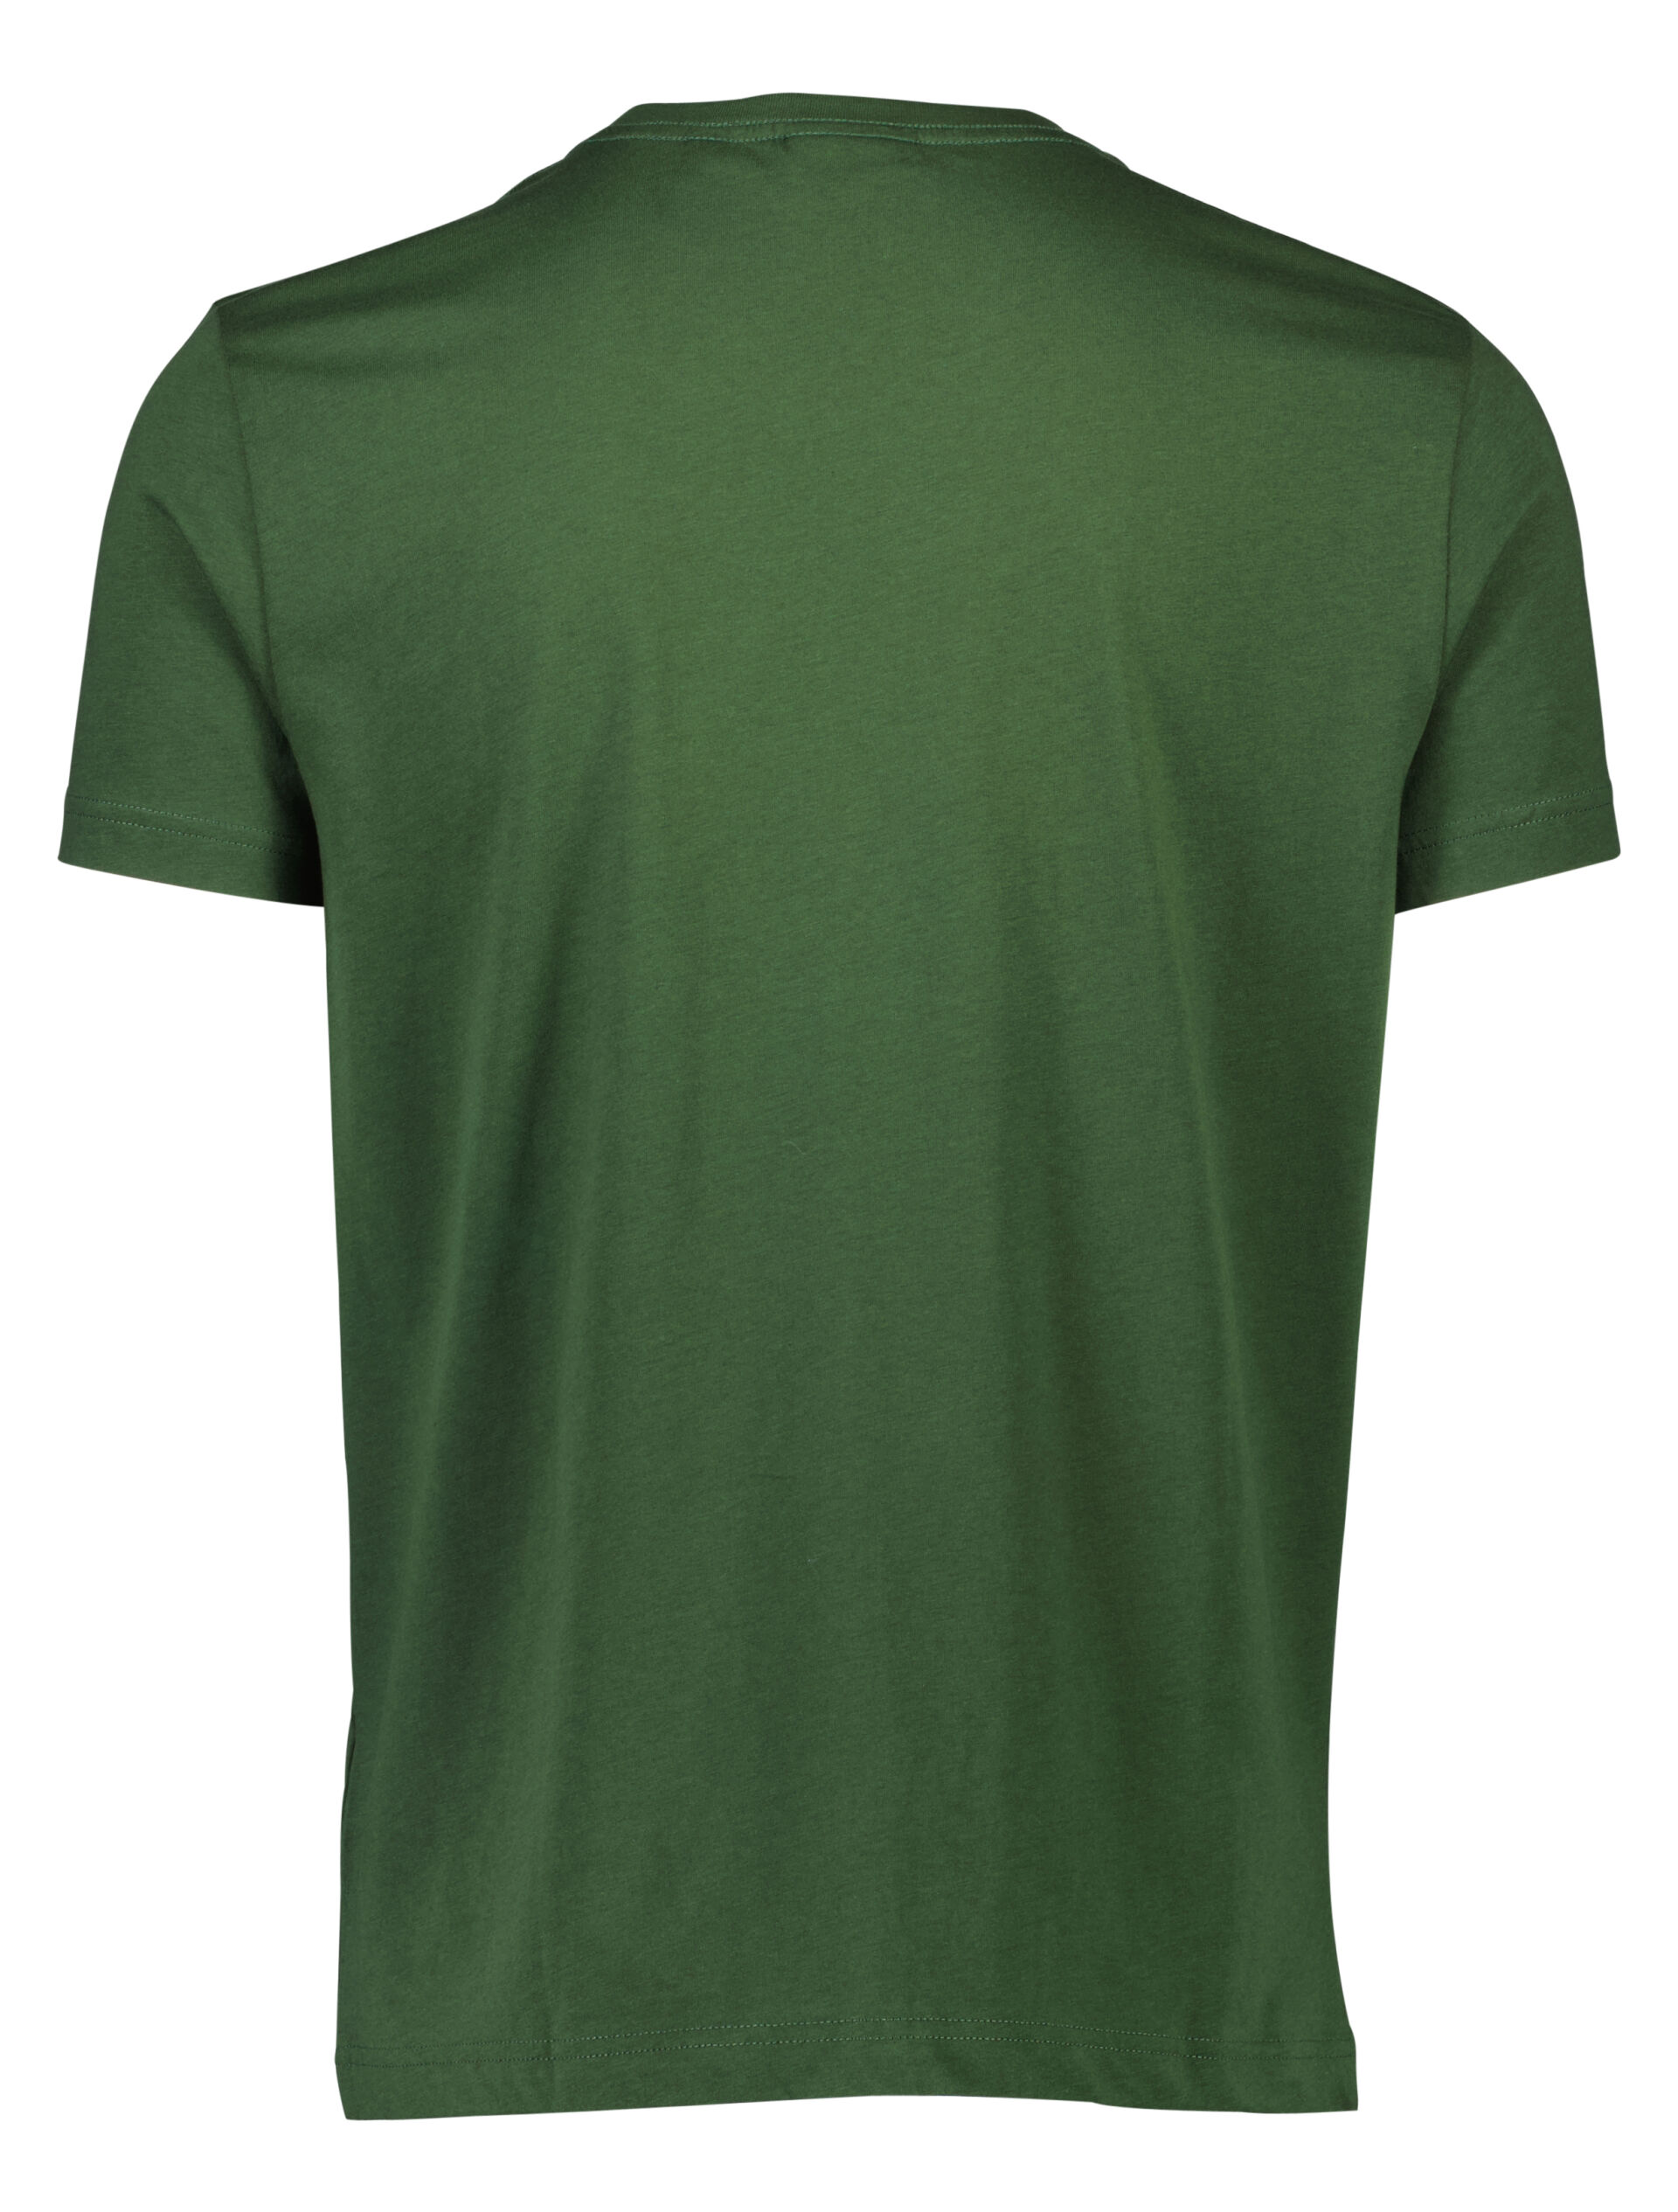 Gant  T-shirt 90-400157